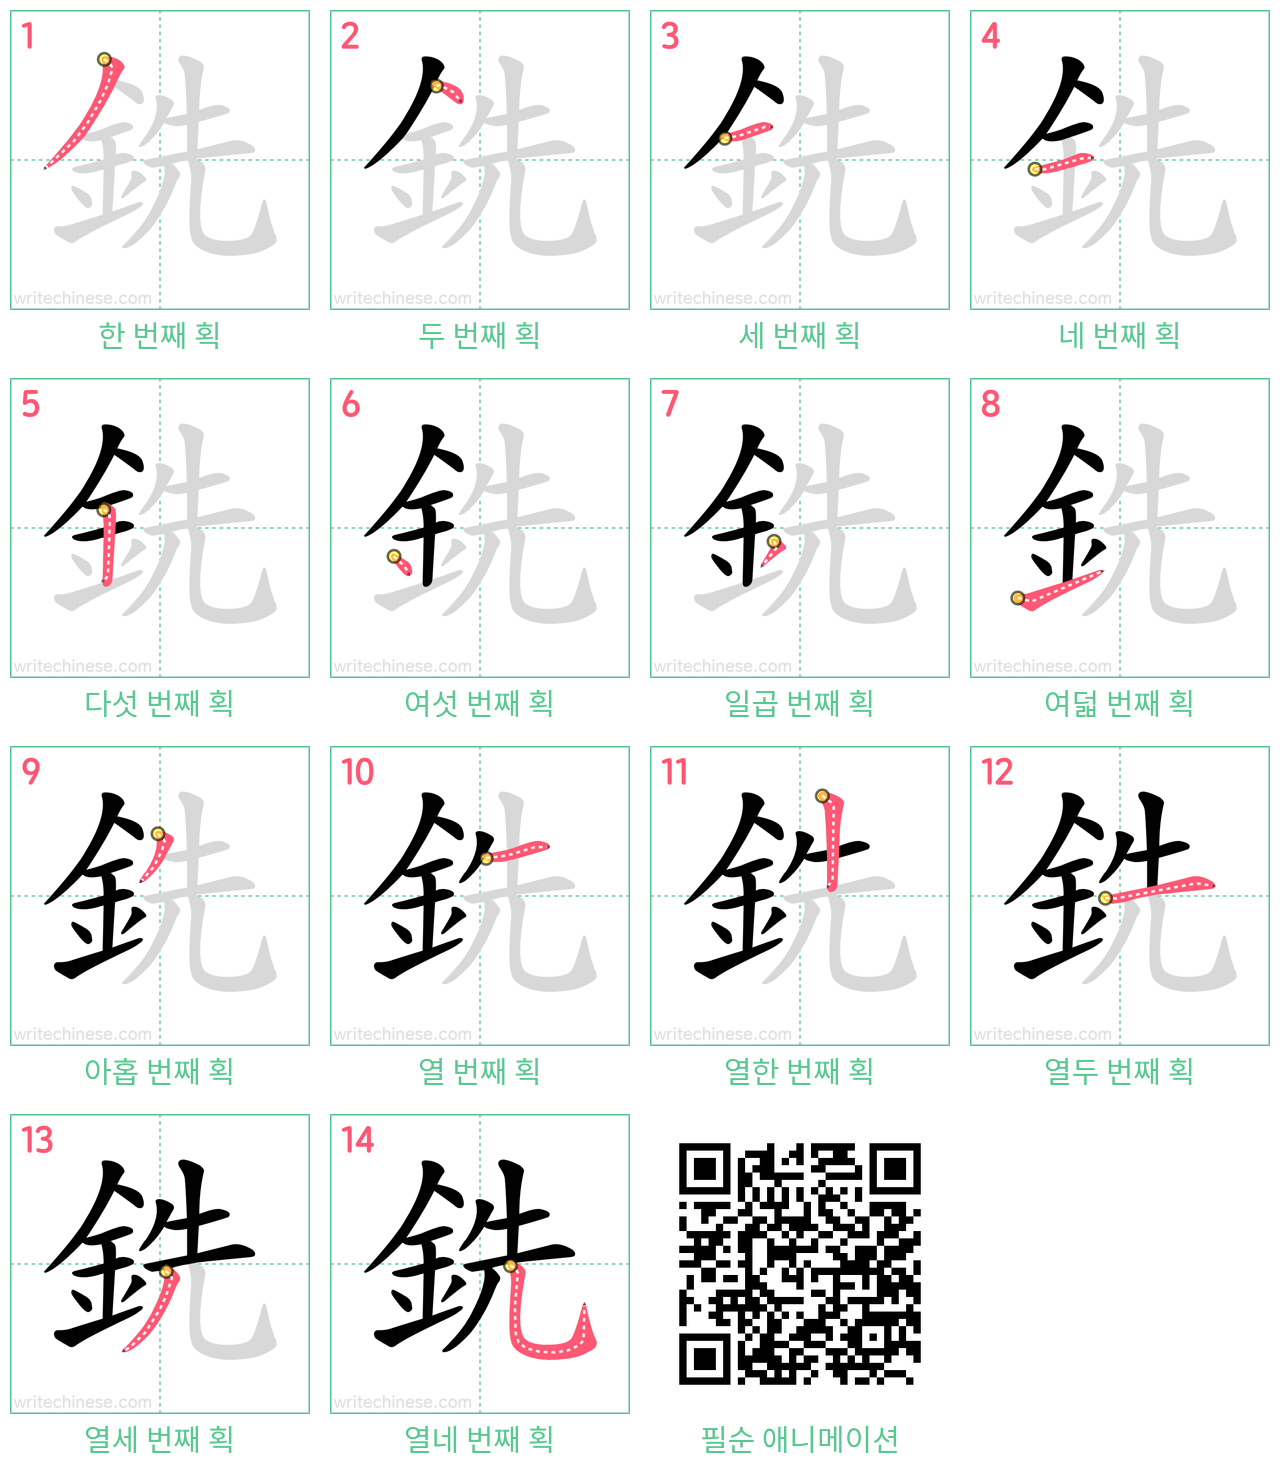 銑 step-by-step stroke order diagrams